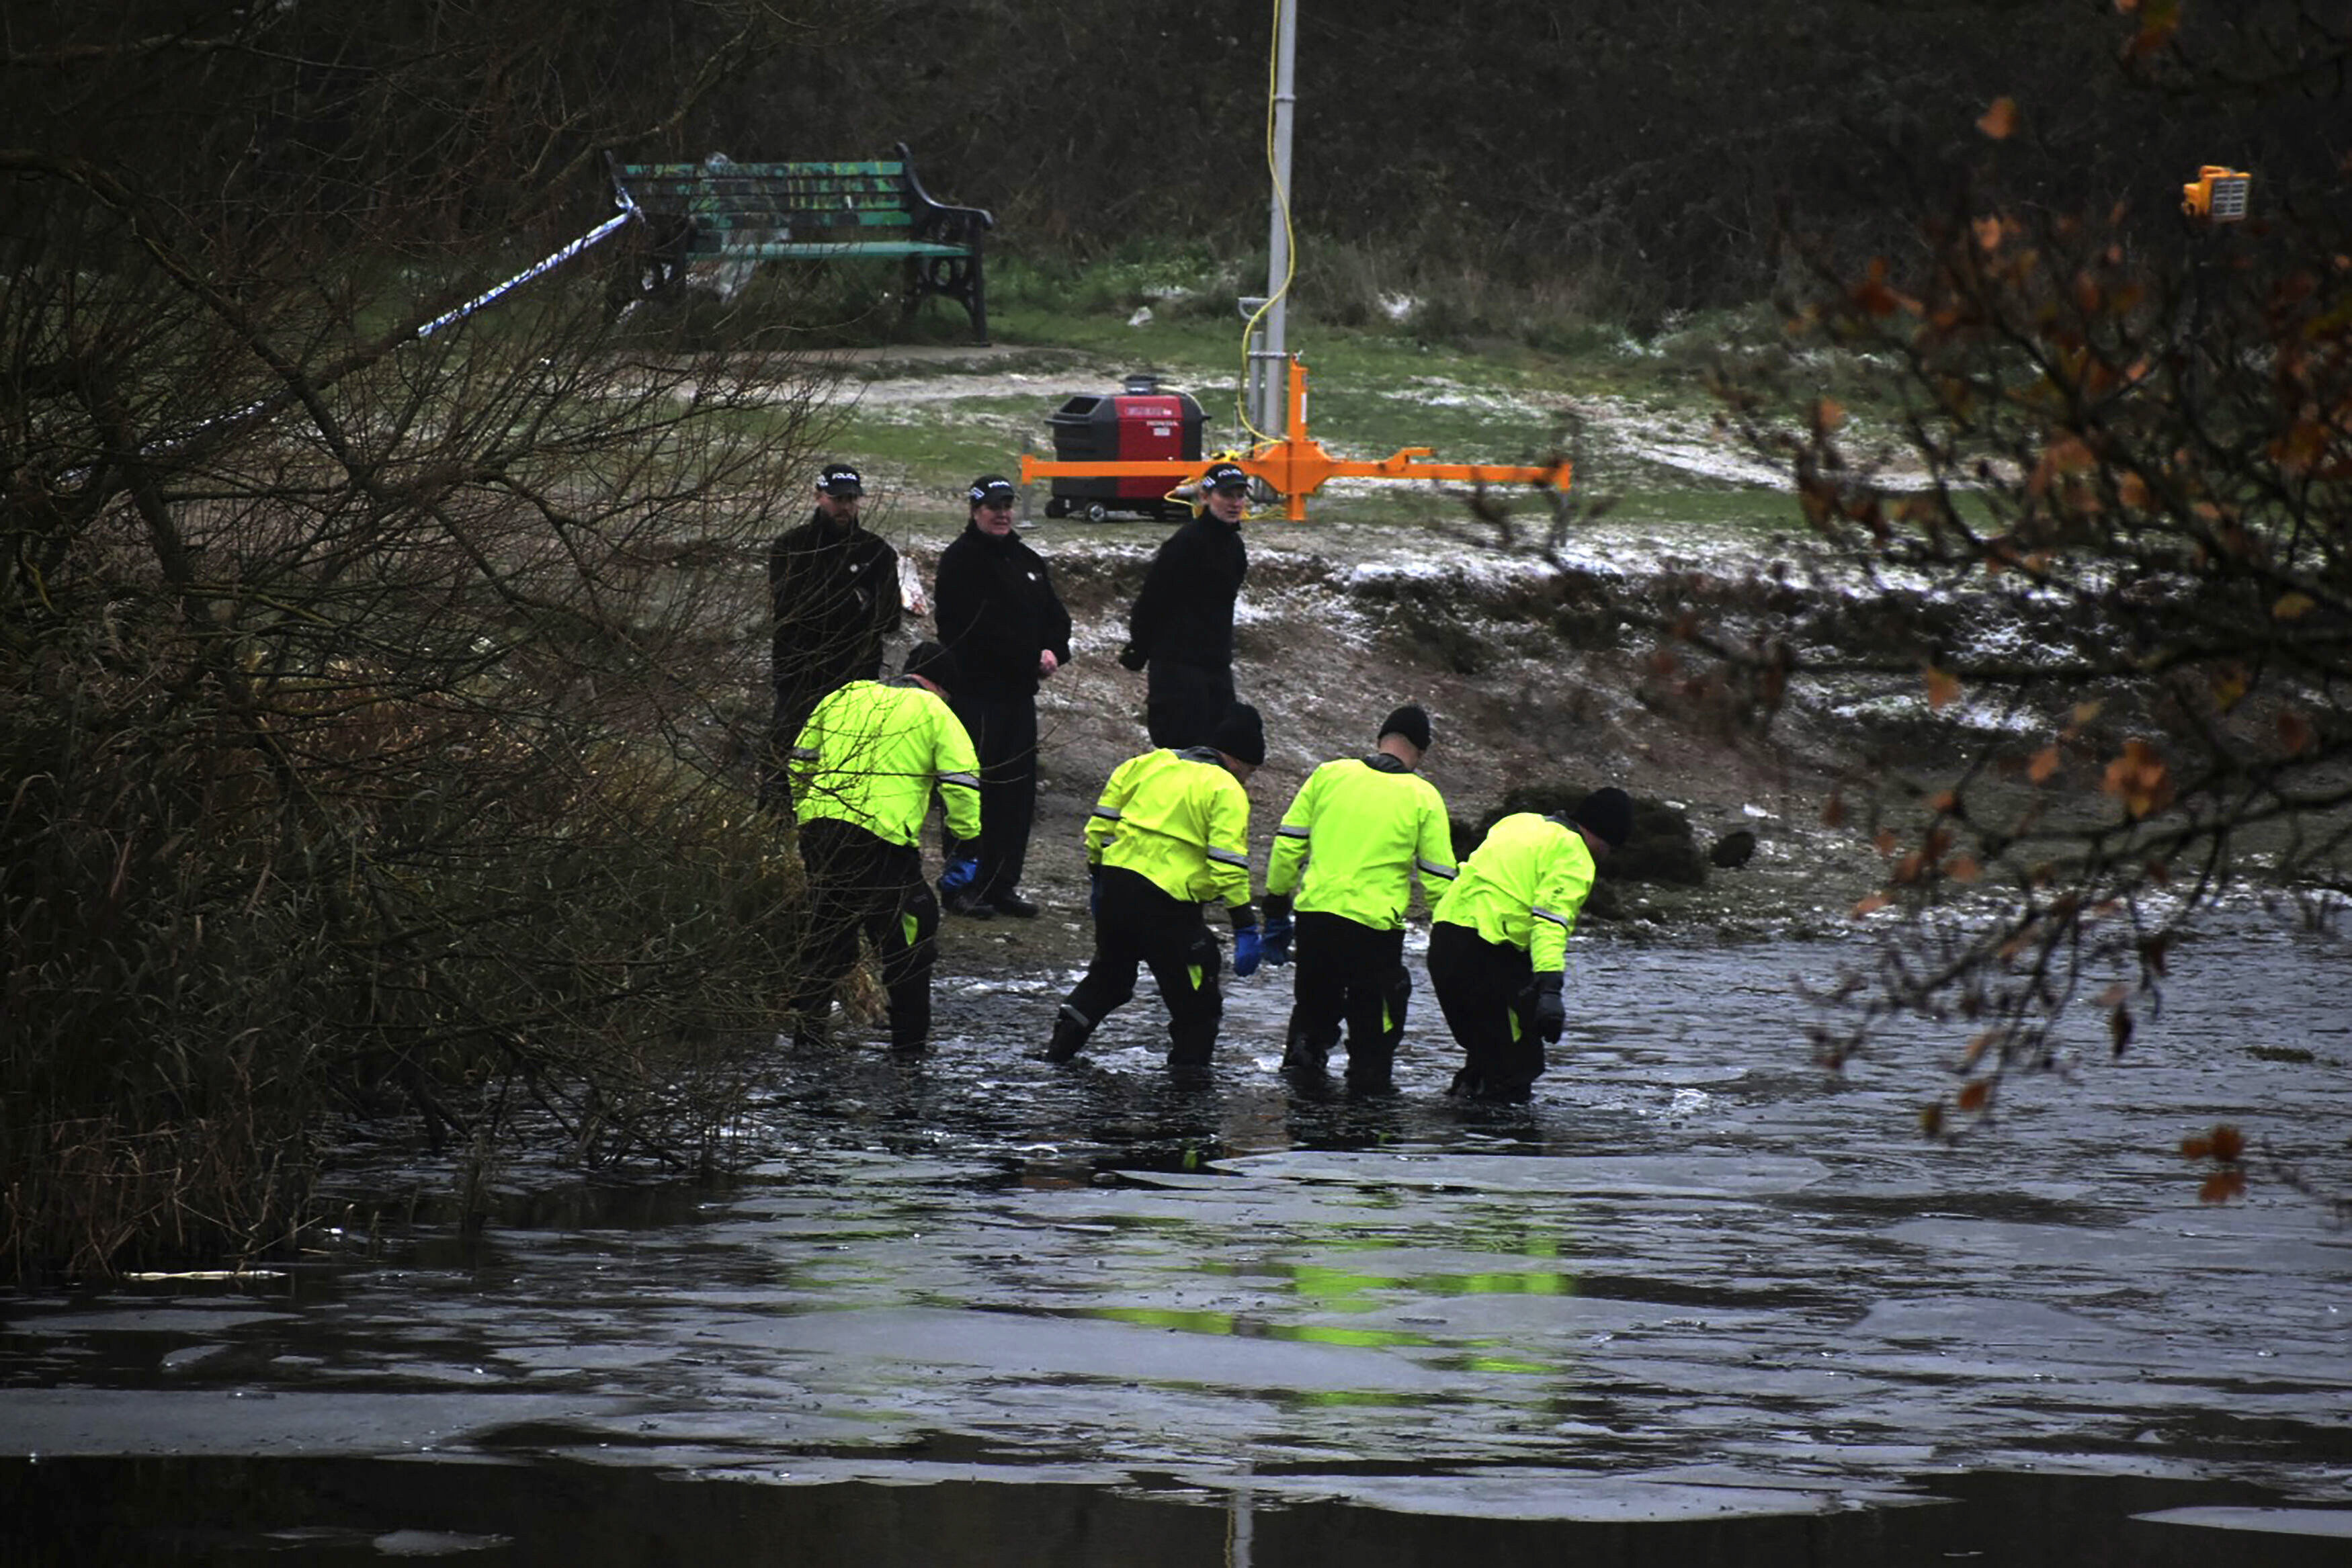 Equipos de búsqueda de la policía buscan en un lago congelado luego de que cuatro niños cayeron a las aguas gélidas y tres de ellos murieron; el cuarto estaba muy grava, en Babbs Mill Park en Kingshurst, Solihull, Inglaterra, el lunes 12 de diciembre de 2022. (Matthew Cooper/PA vía AP)